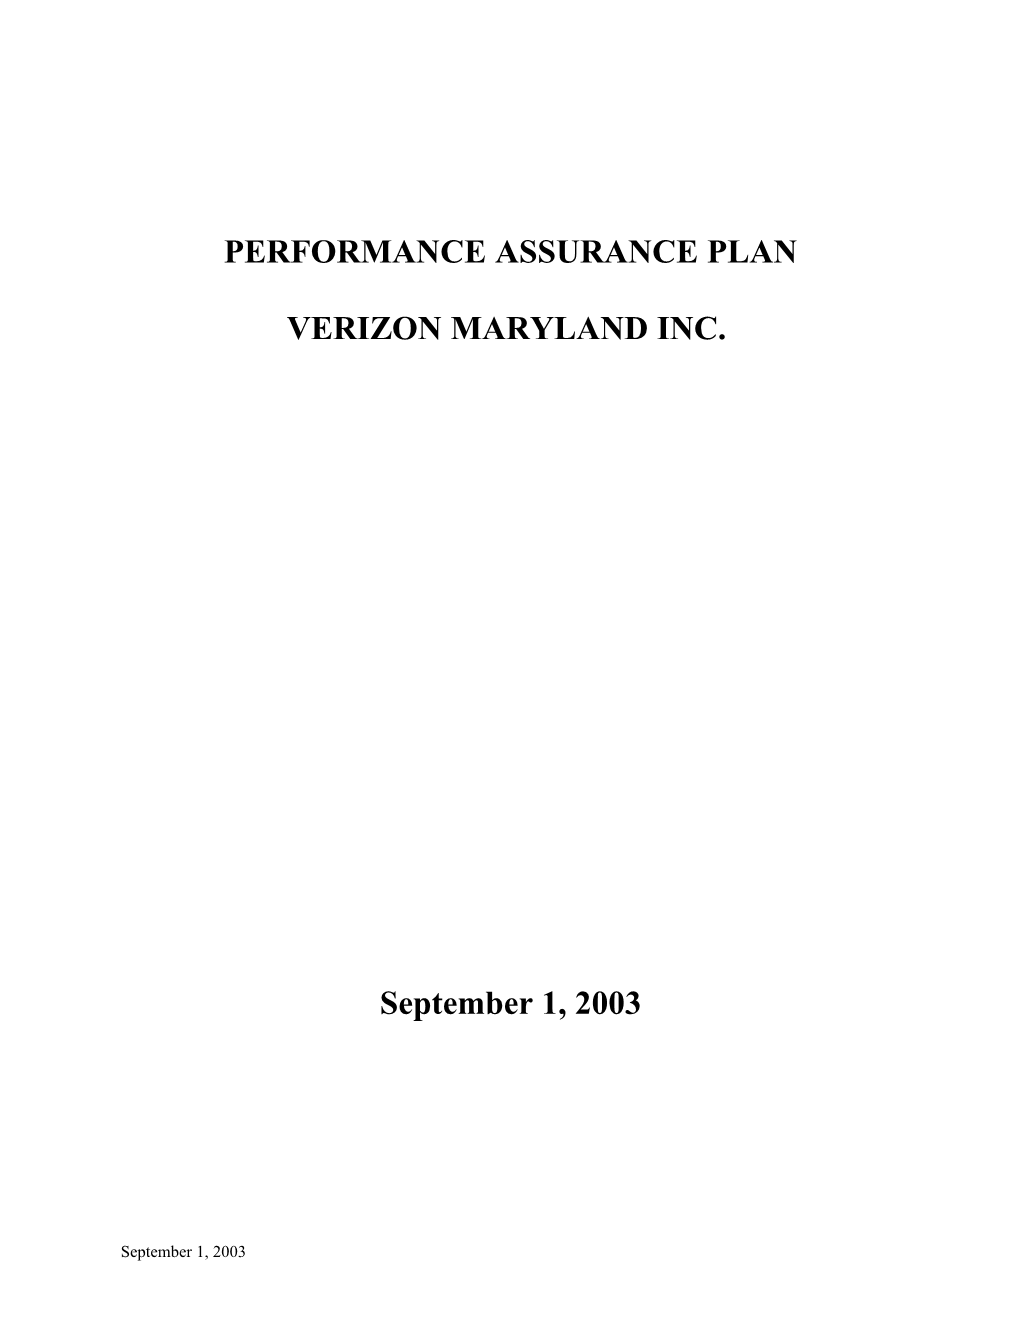 Performance Assurance Plan